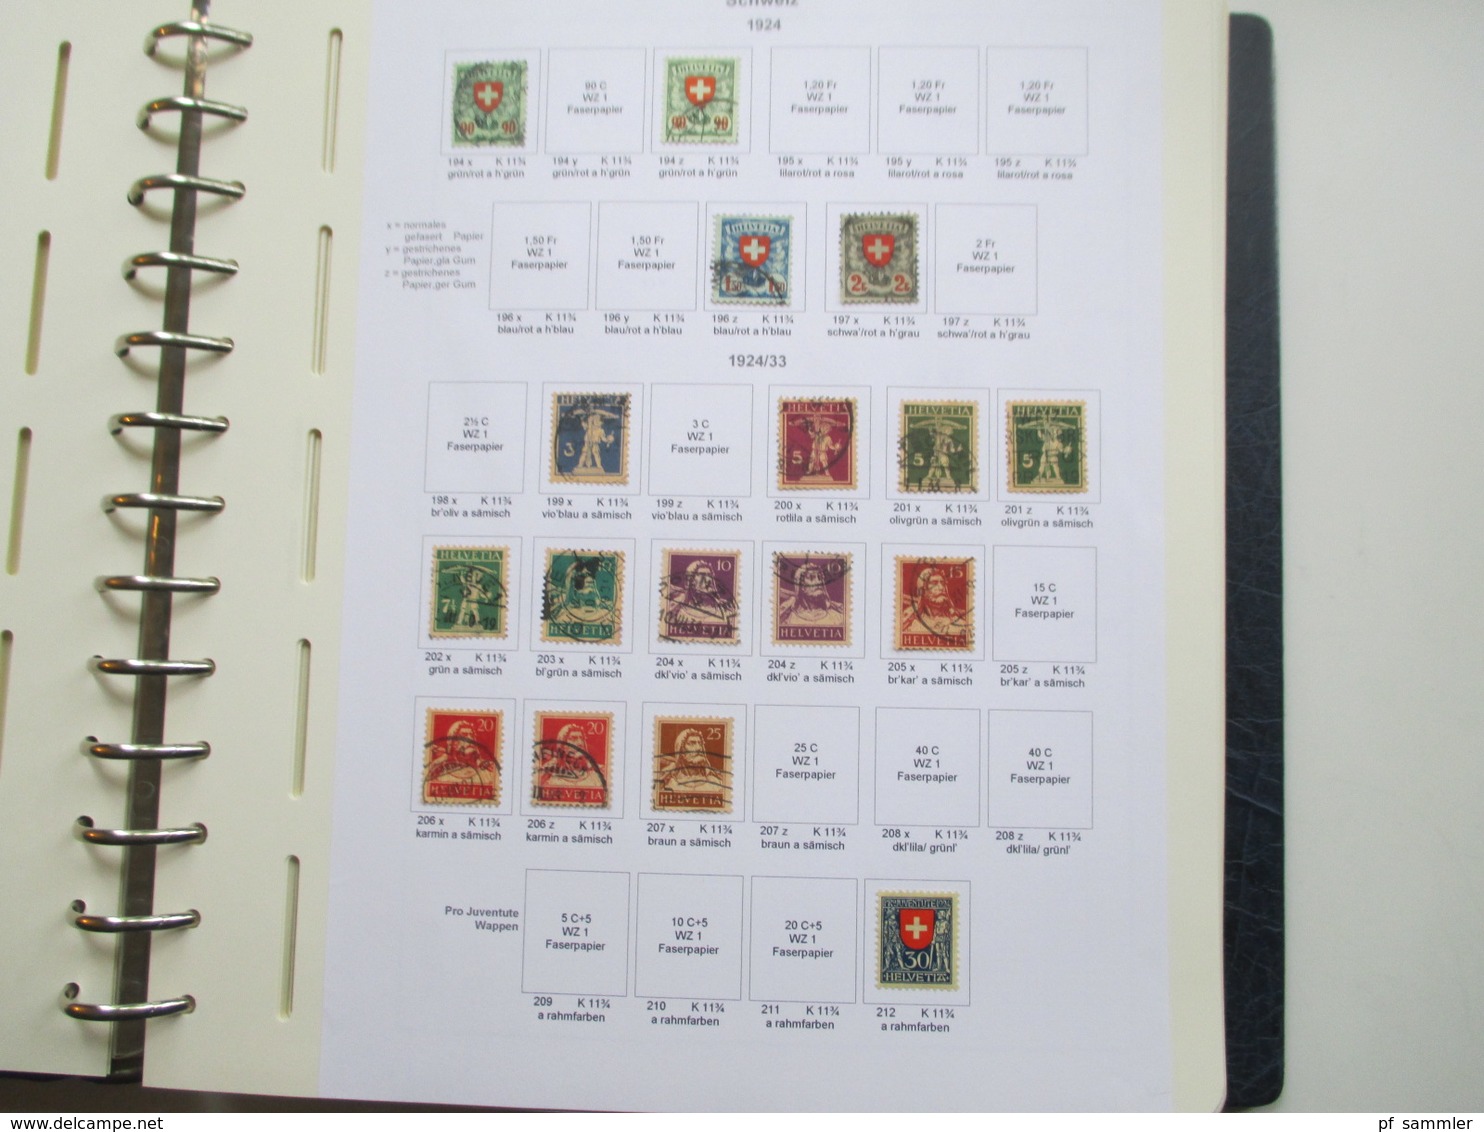 Schweiz Sammlung ab 1862 - 1999 gestempelt / vereinzelt * Angangs auch mit Farben / Typen! Saubere Stempel!!